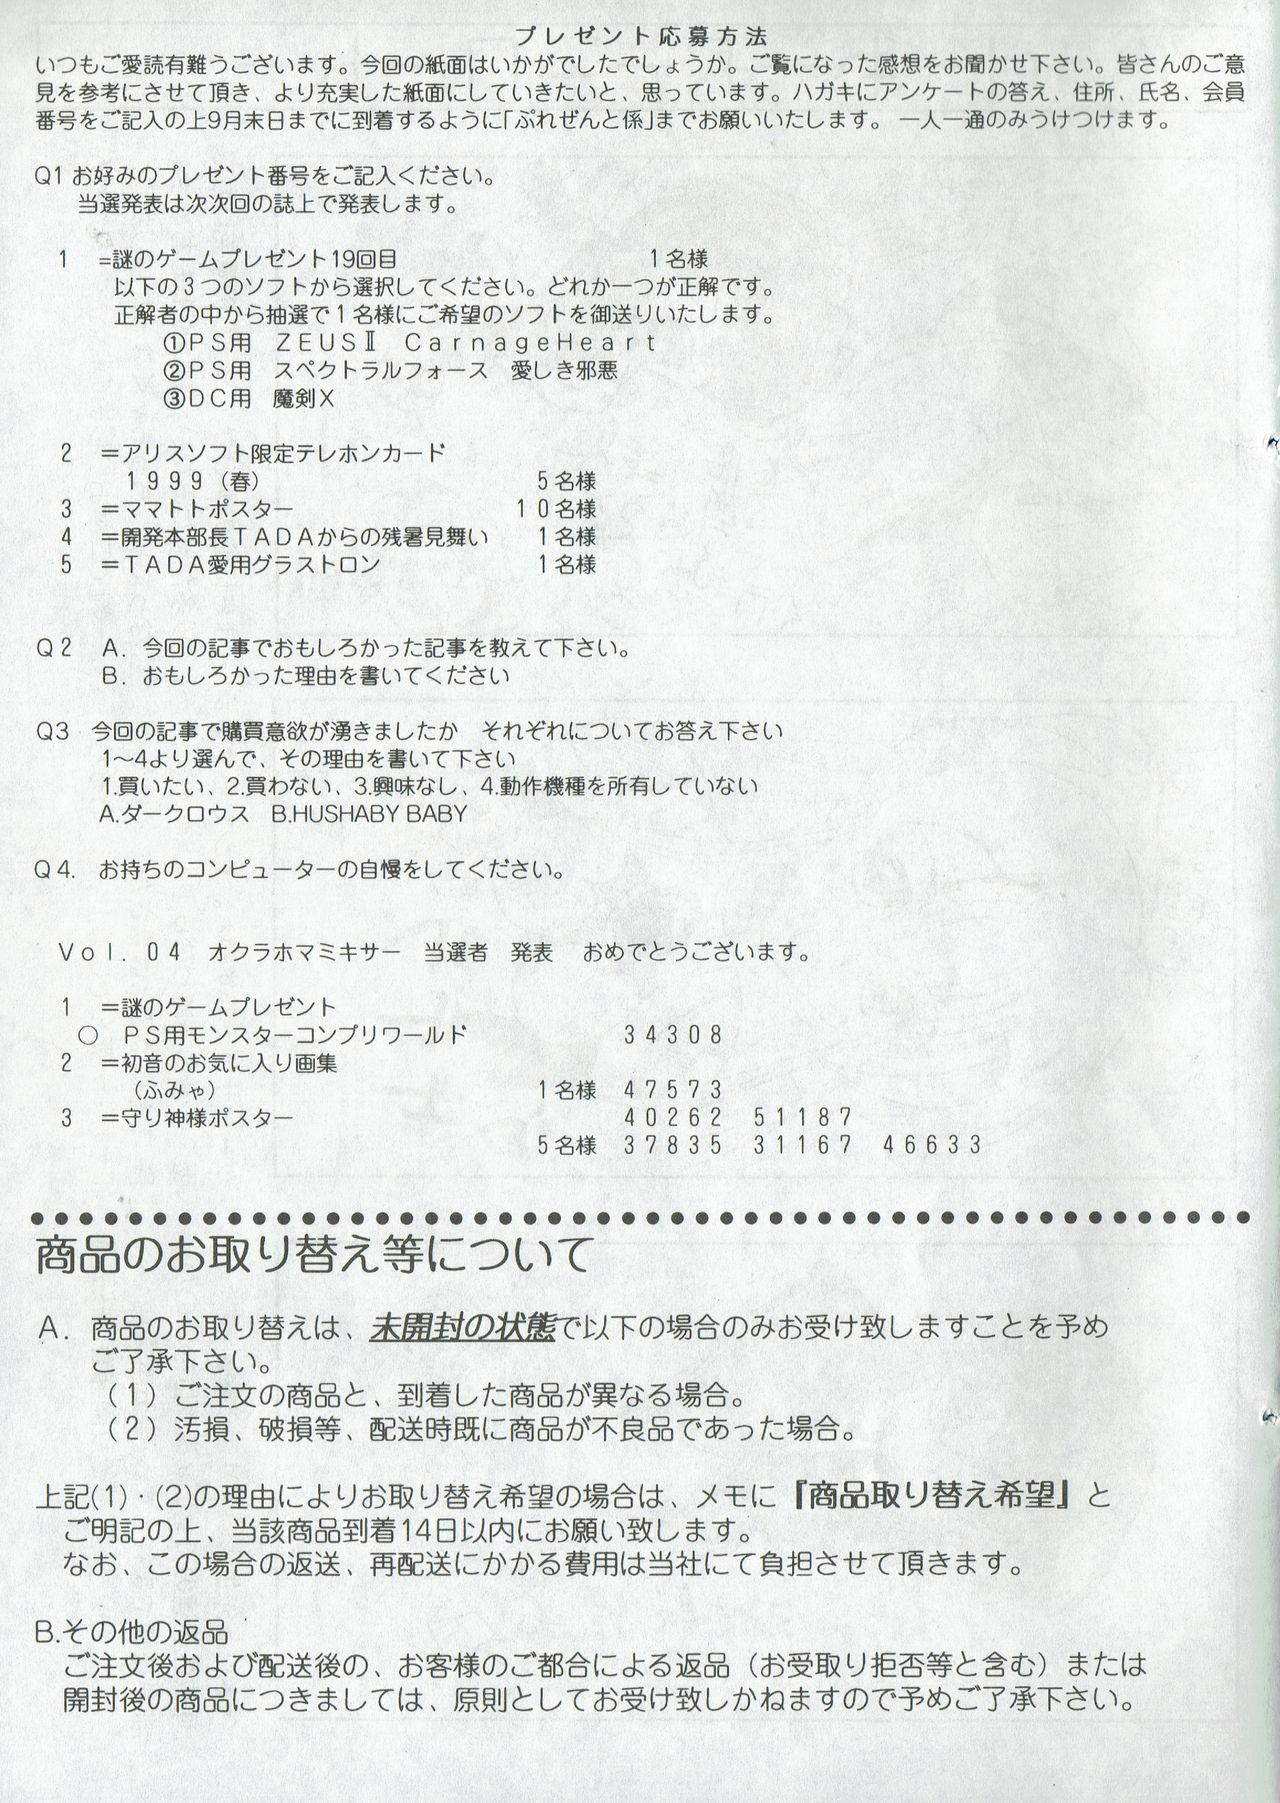 Arisu no Denchi Bakudan Vol. 06 27